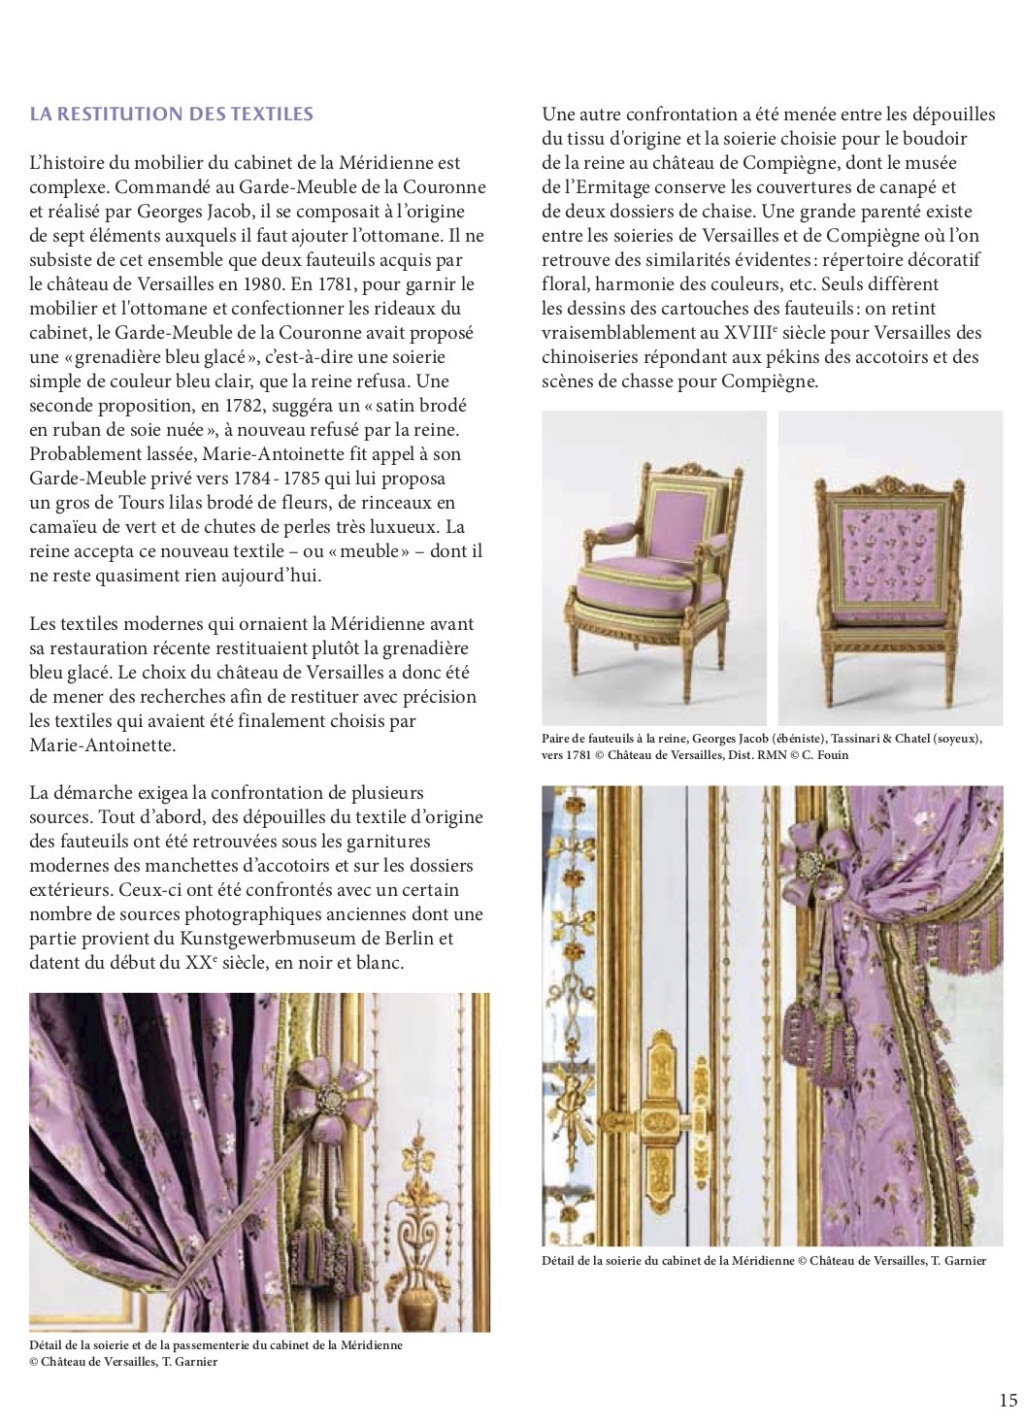 Les cabinets intérieurs de Marie-Antoinette au château de Versailles - Page 3 Dp_cab17